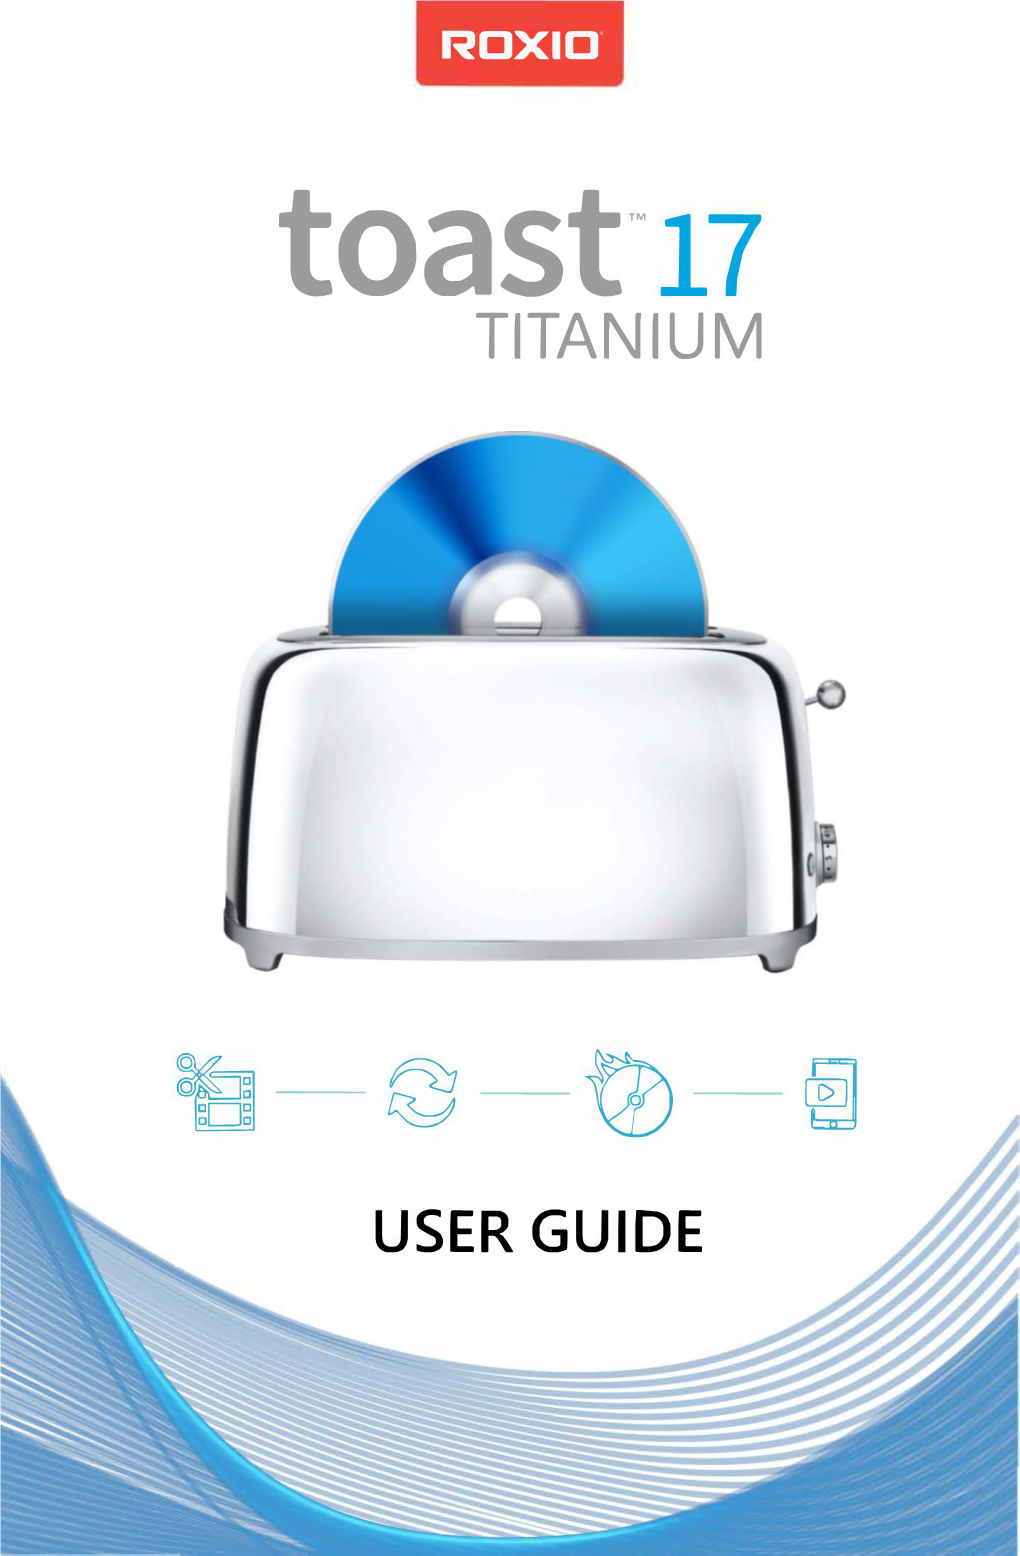 Roxio Toast 17 Titanium User Guide